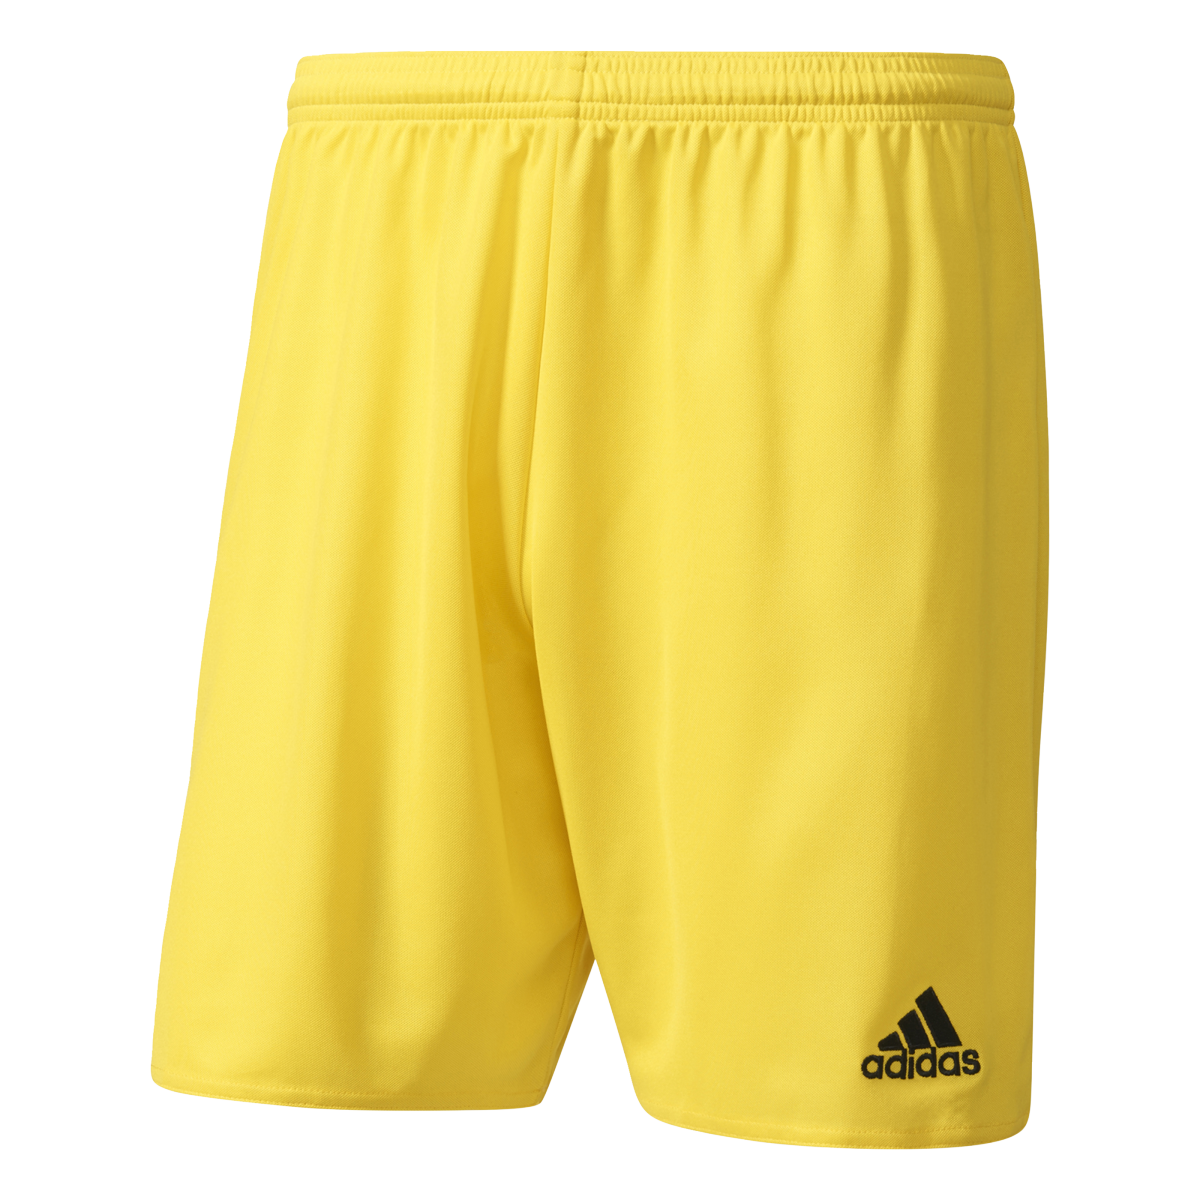 Adidas Parma 16 žlutá/černá UK Junior S Dětské